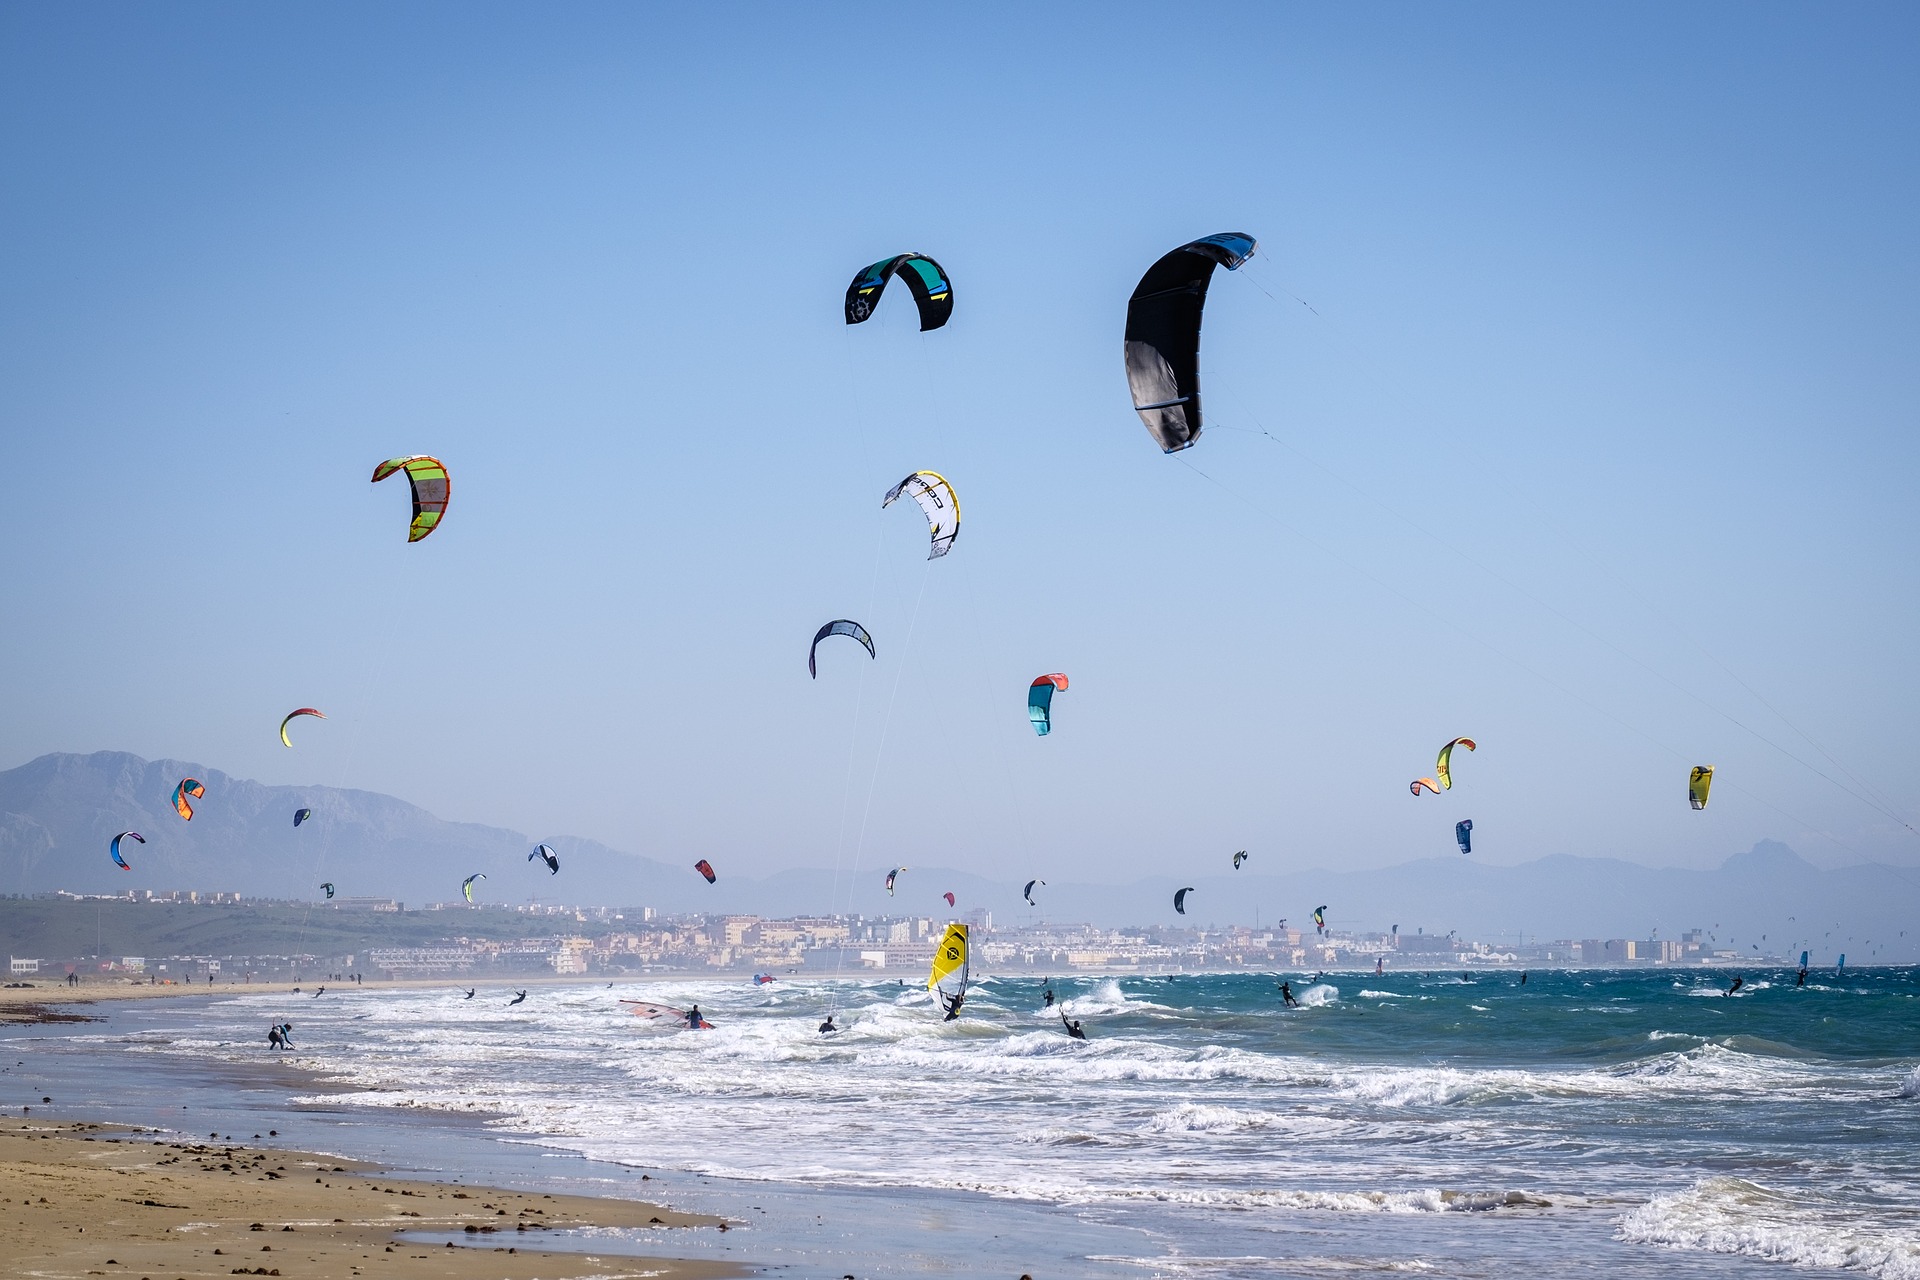  kitesurfers enjoying independence